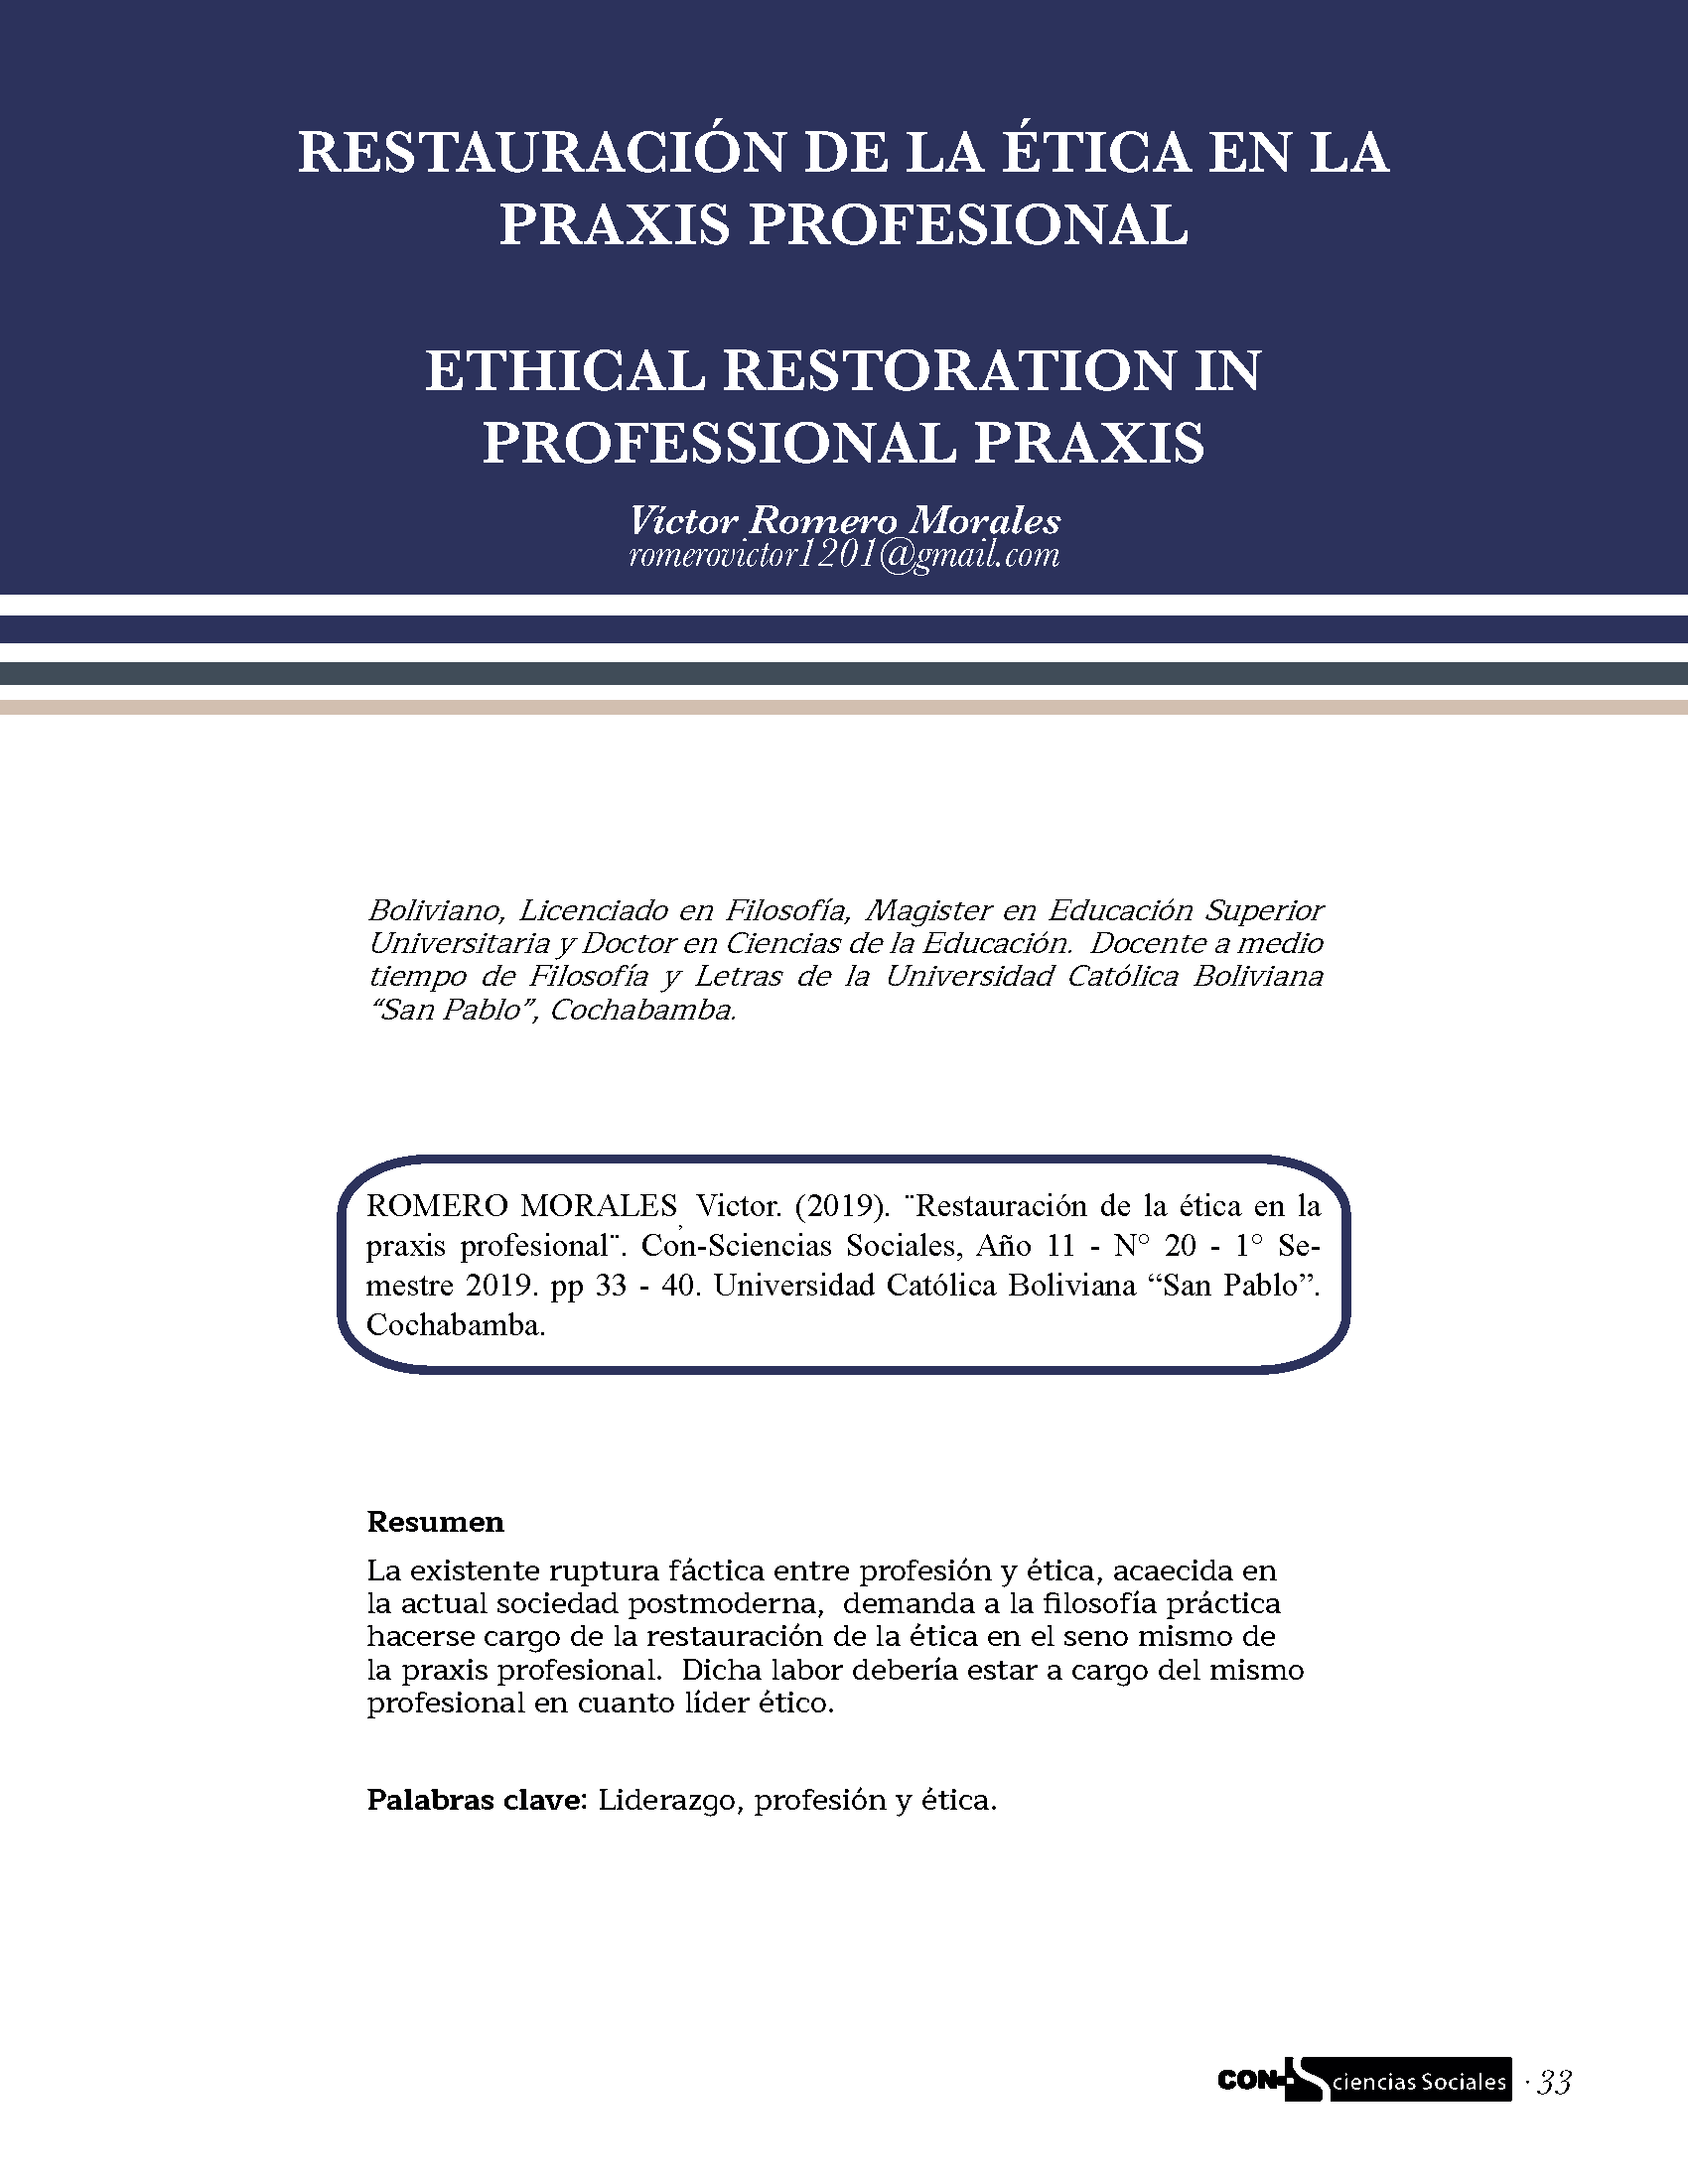 Restauración de la ética en la praxis profesional